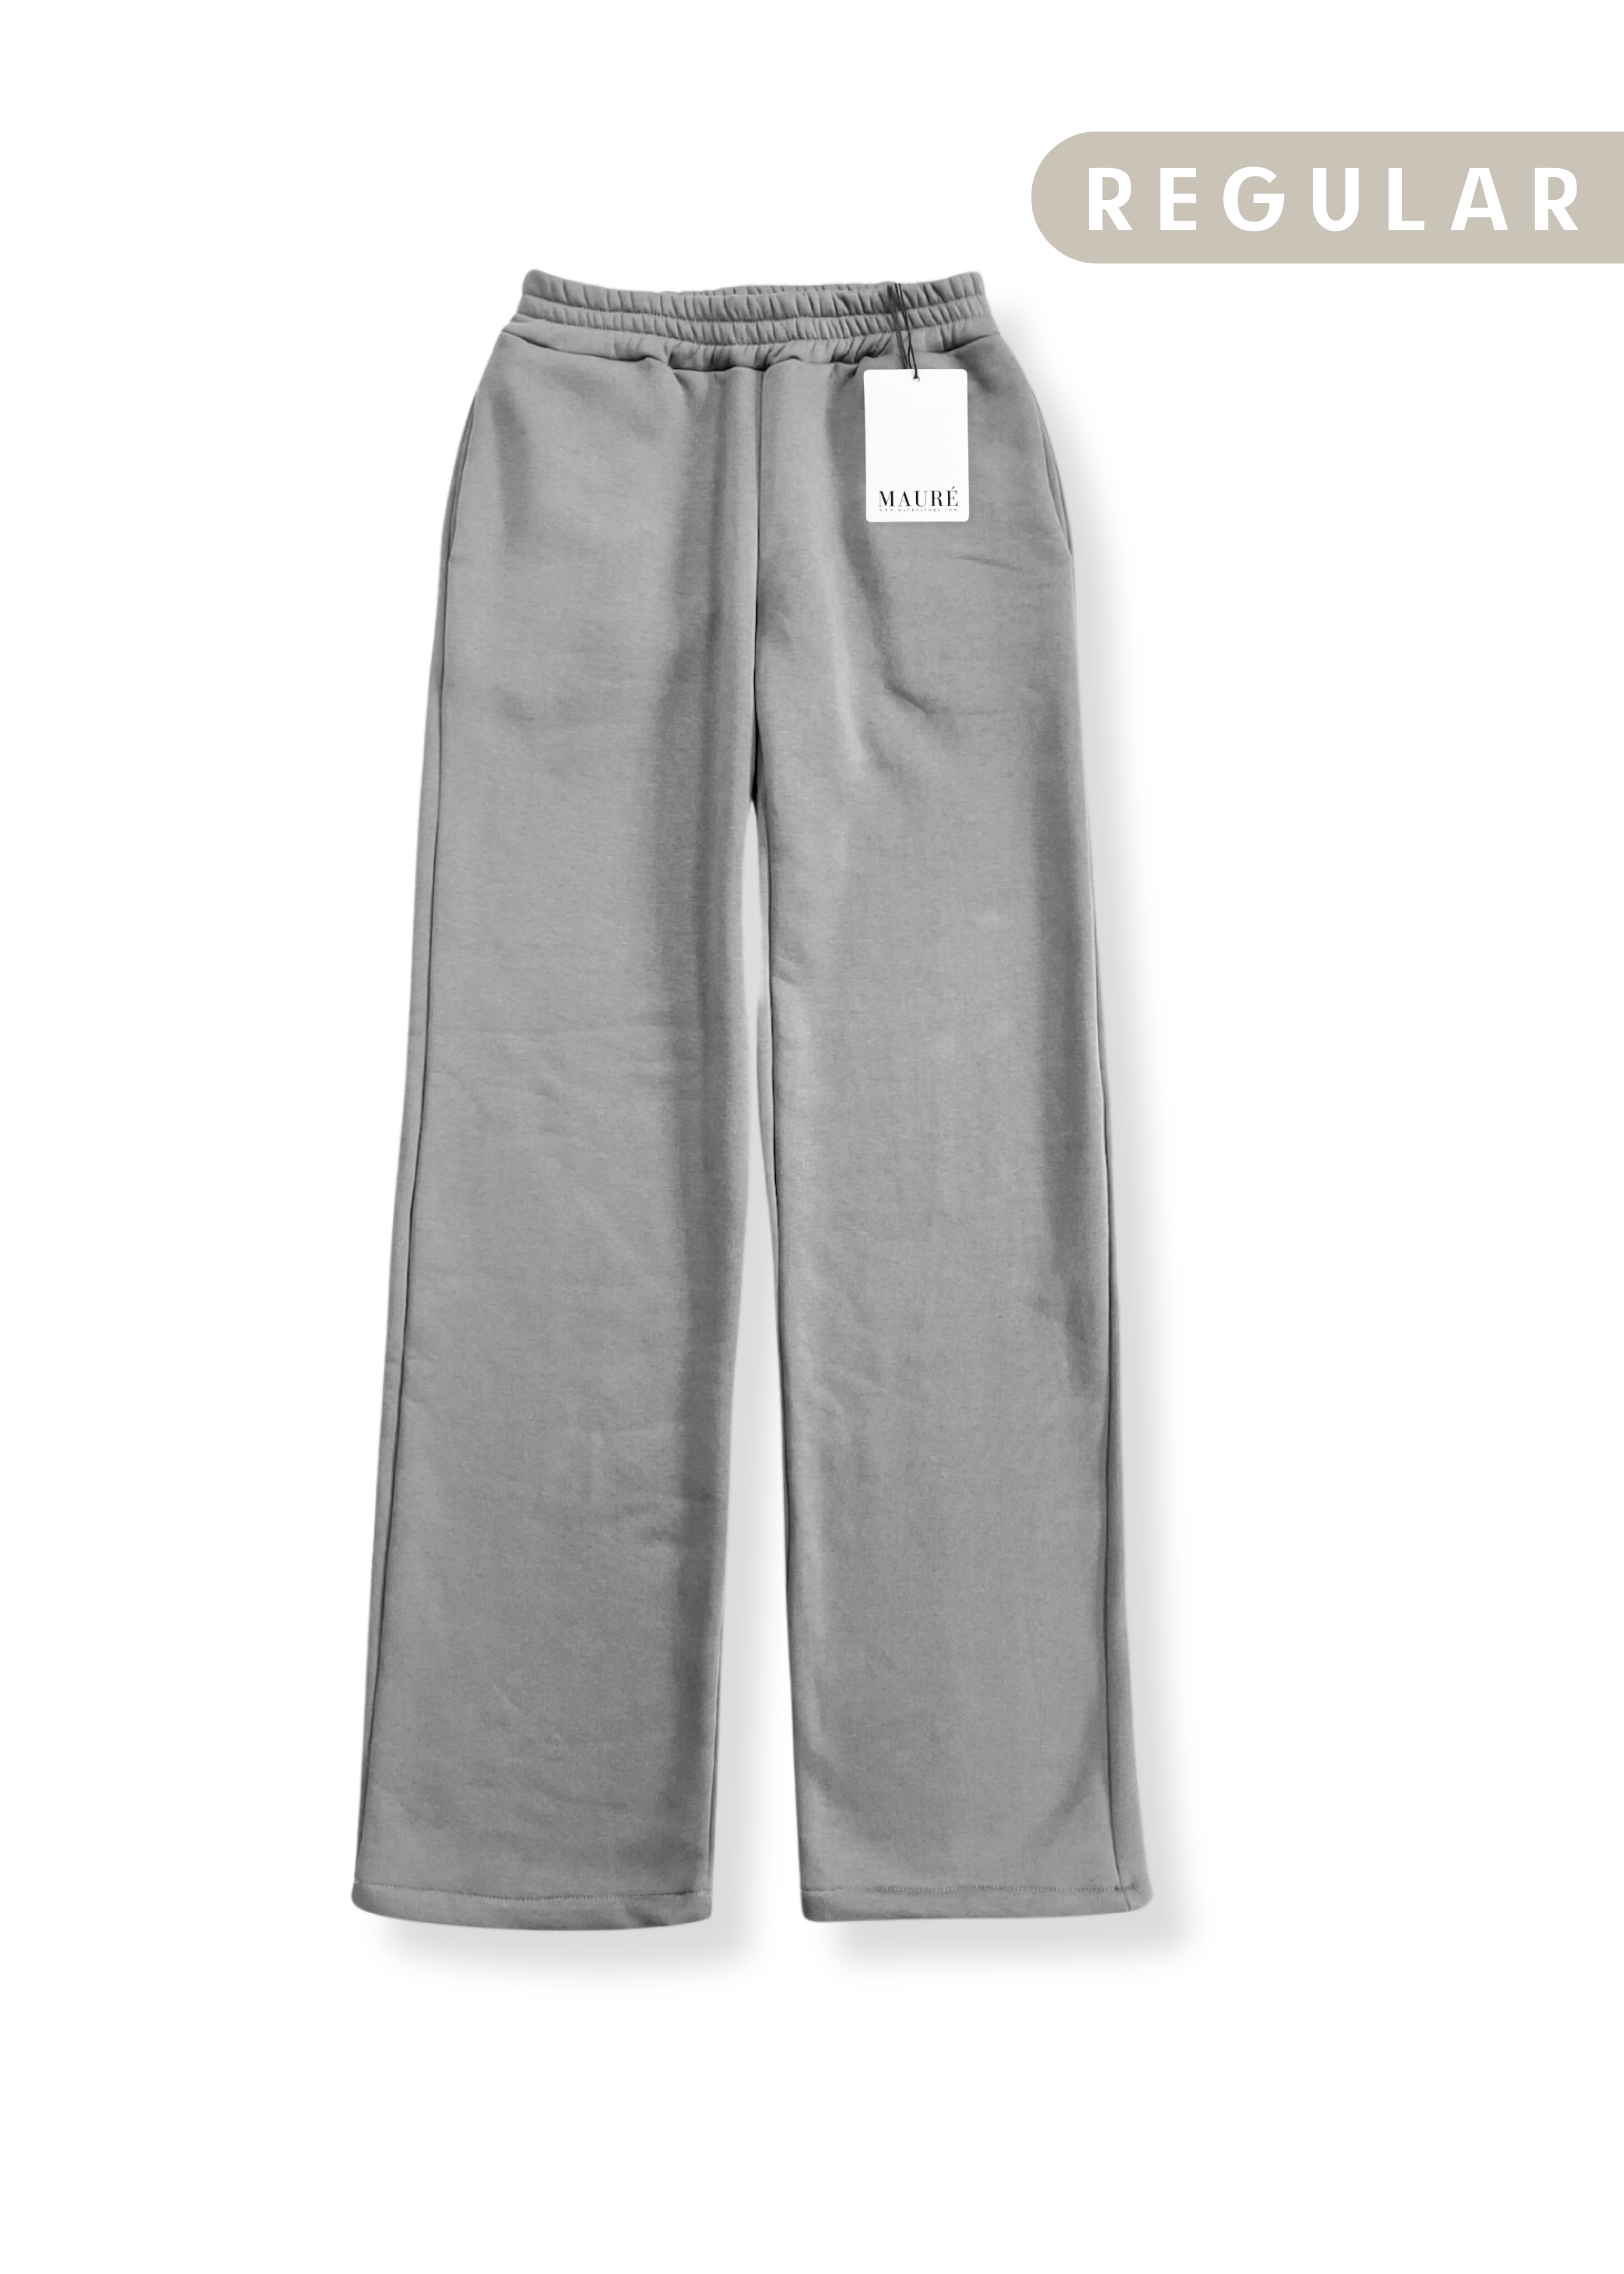 Low/mid waist jogger pants grey (REGULAR)